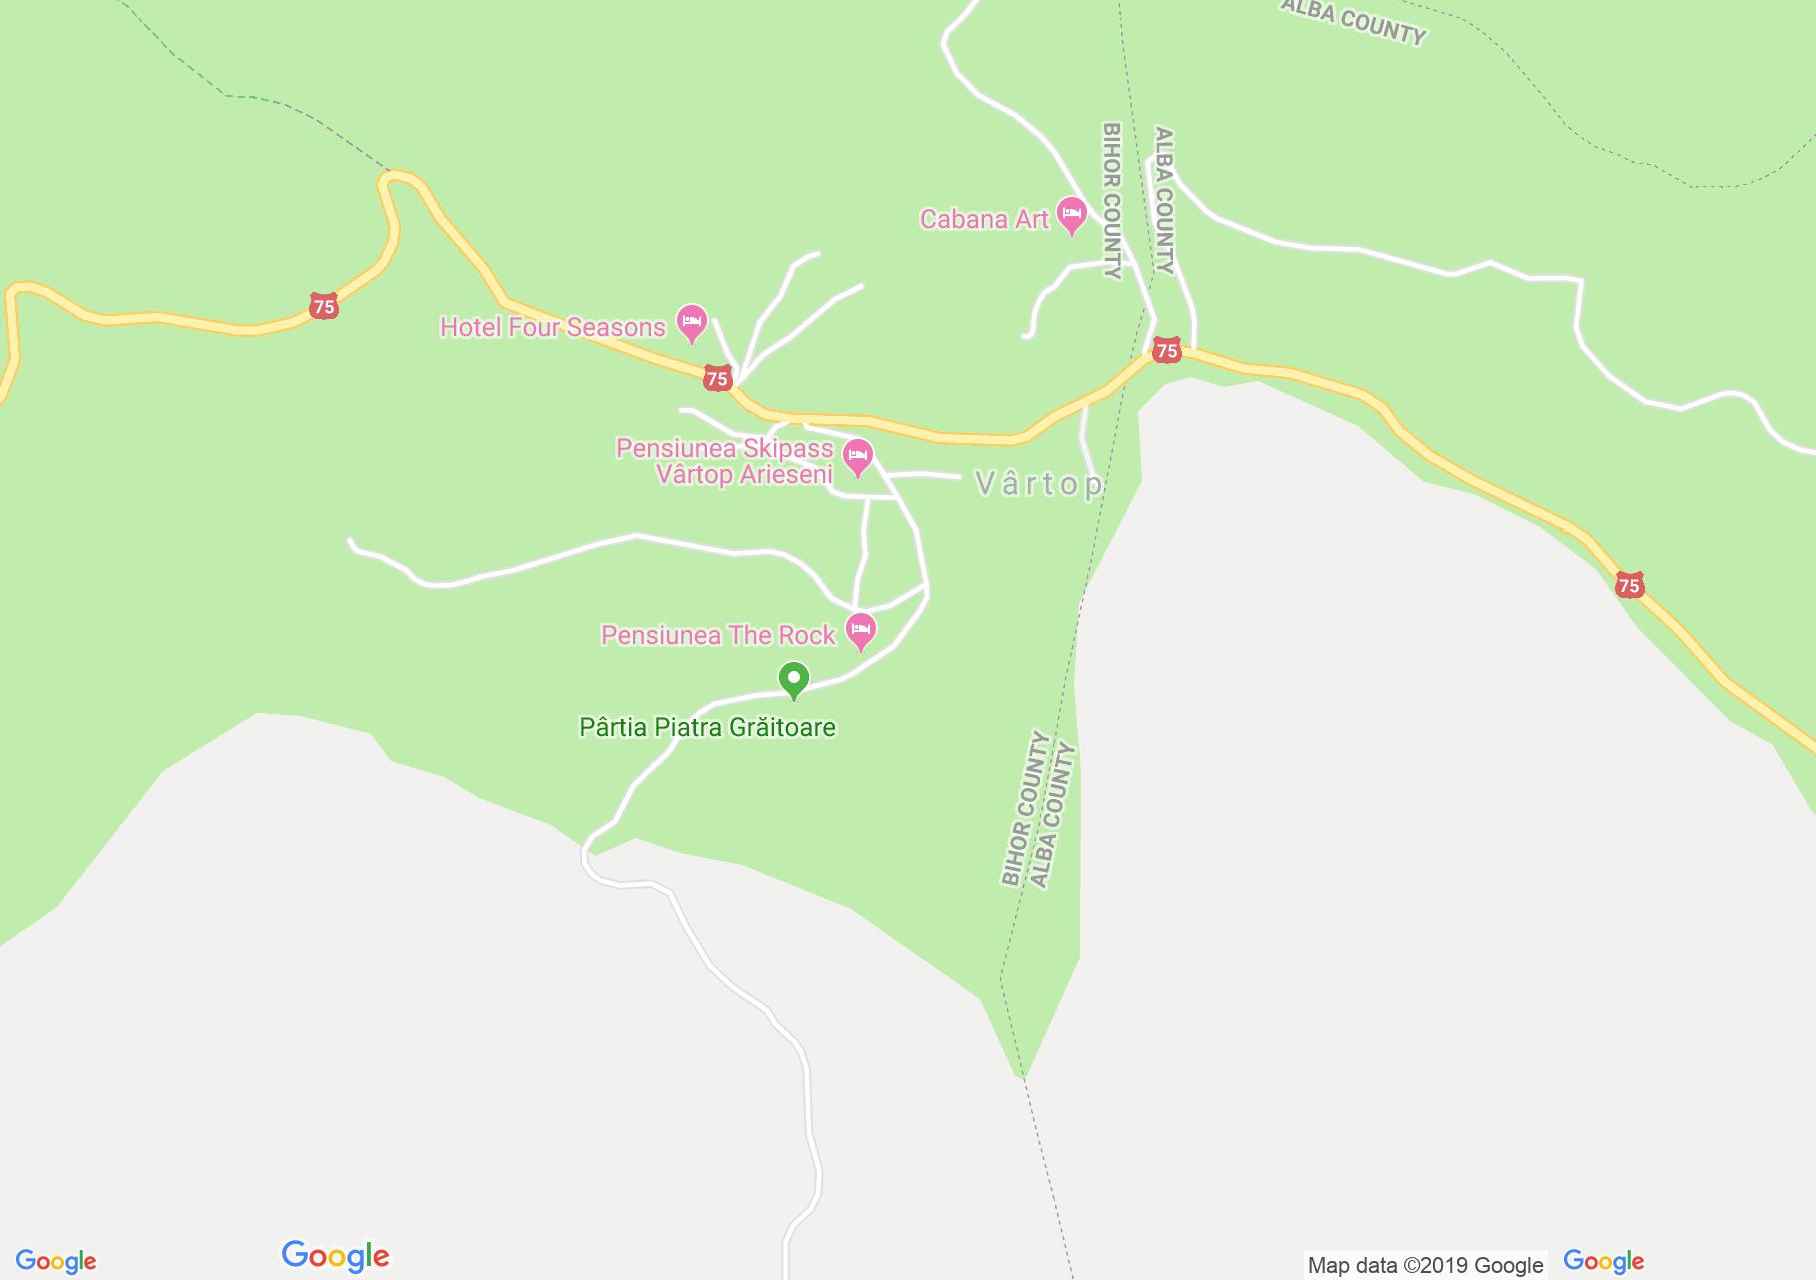 Map of Vârtop: Piatra Graitoare ski slope